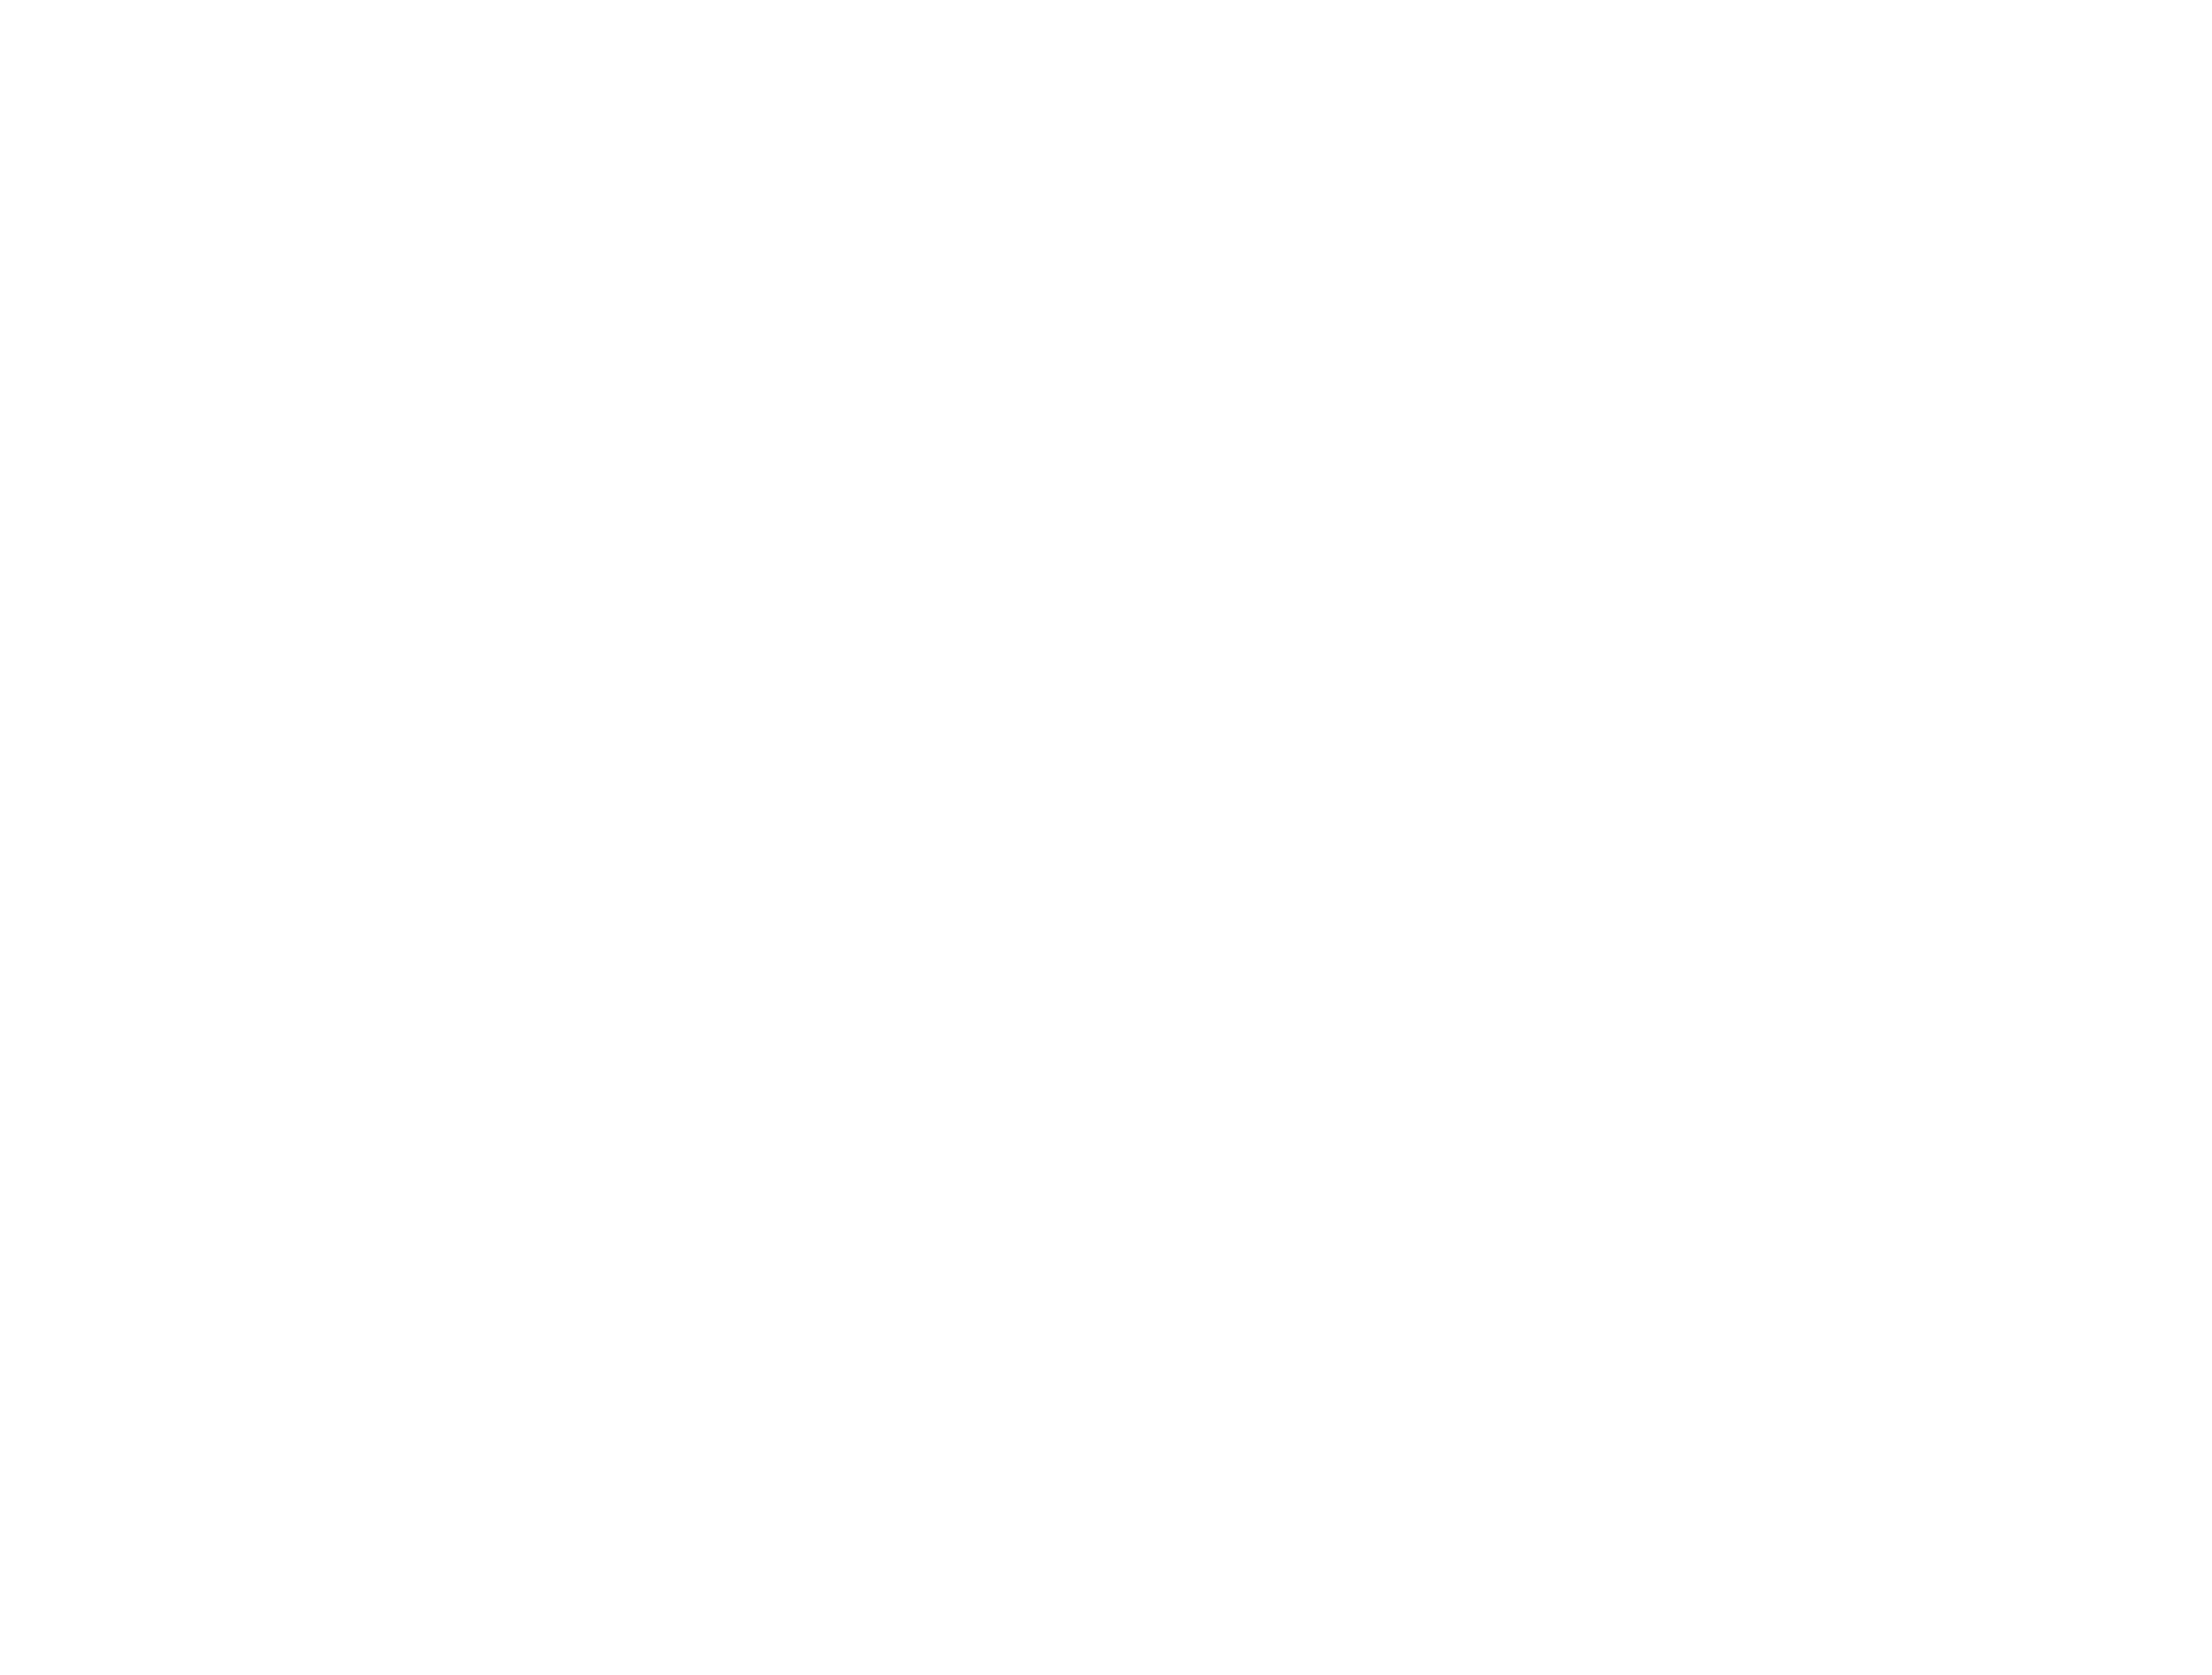 fiat-logo-white